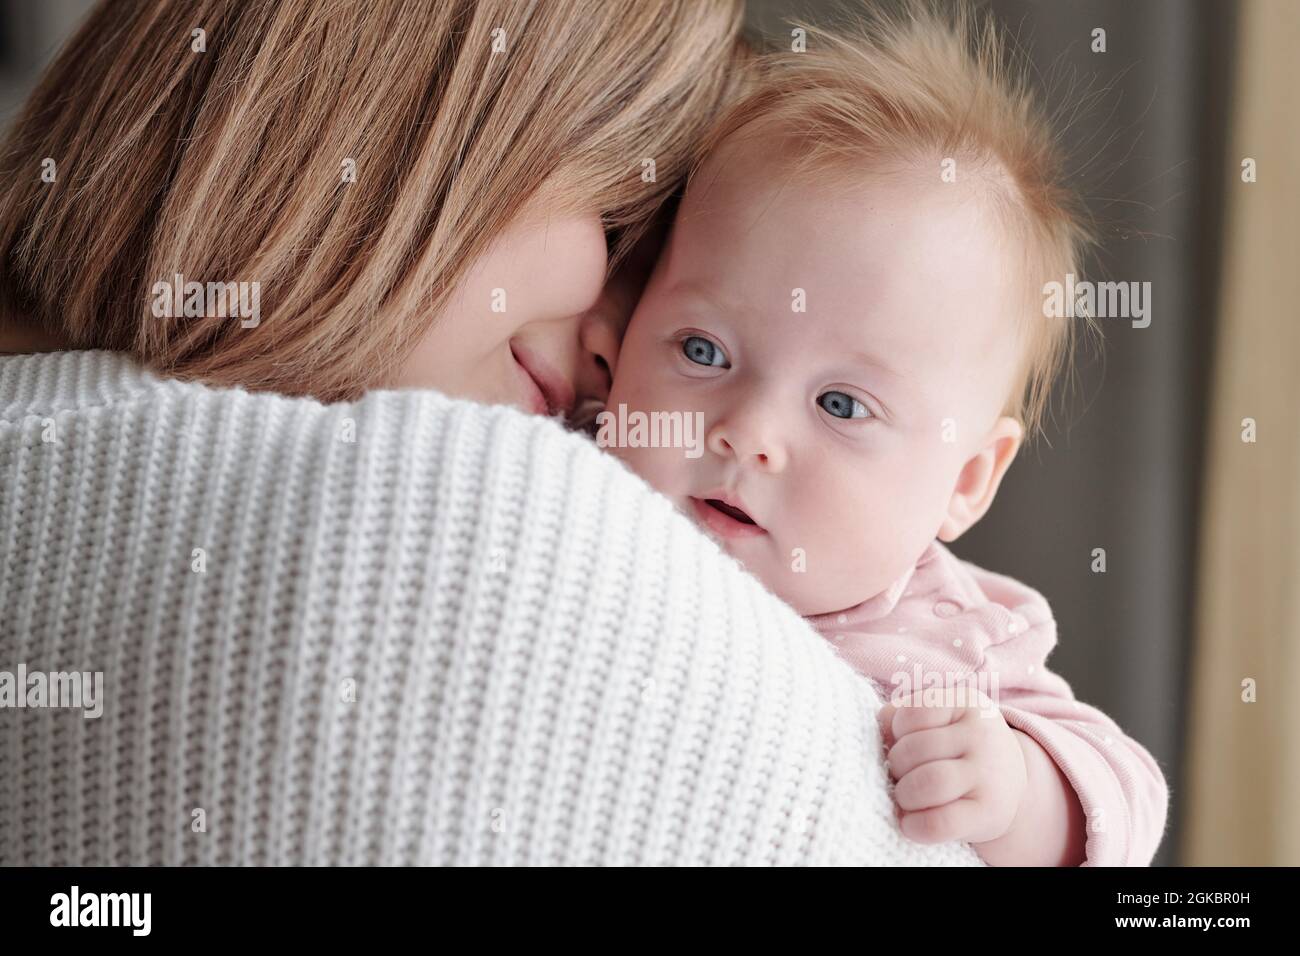 Cara de adorable niña en manos de su feliz joven madre afectuosa Foto de stock